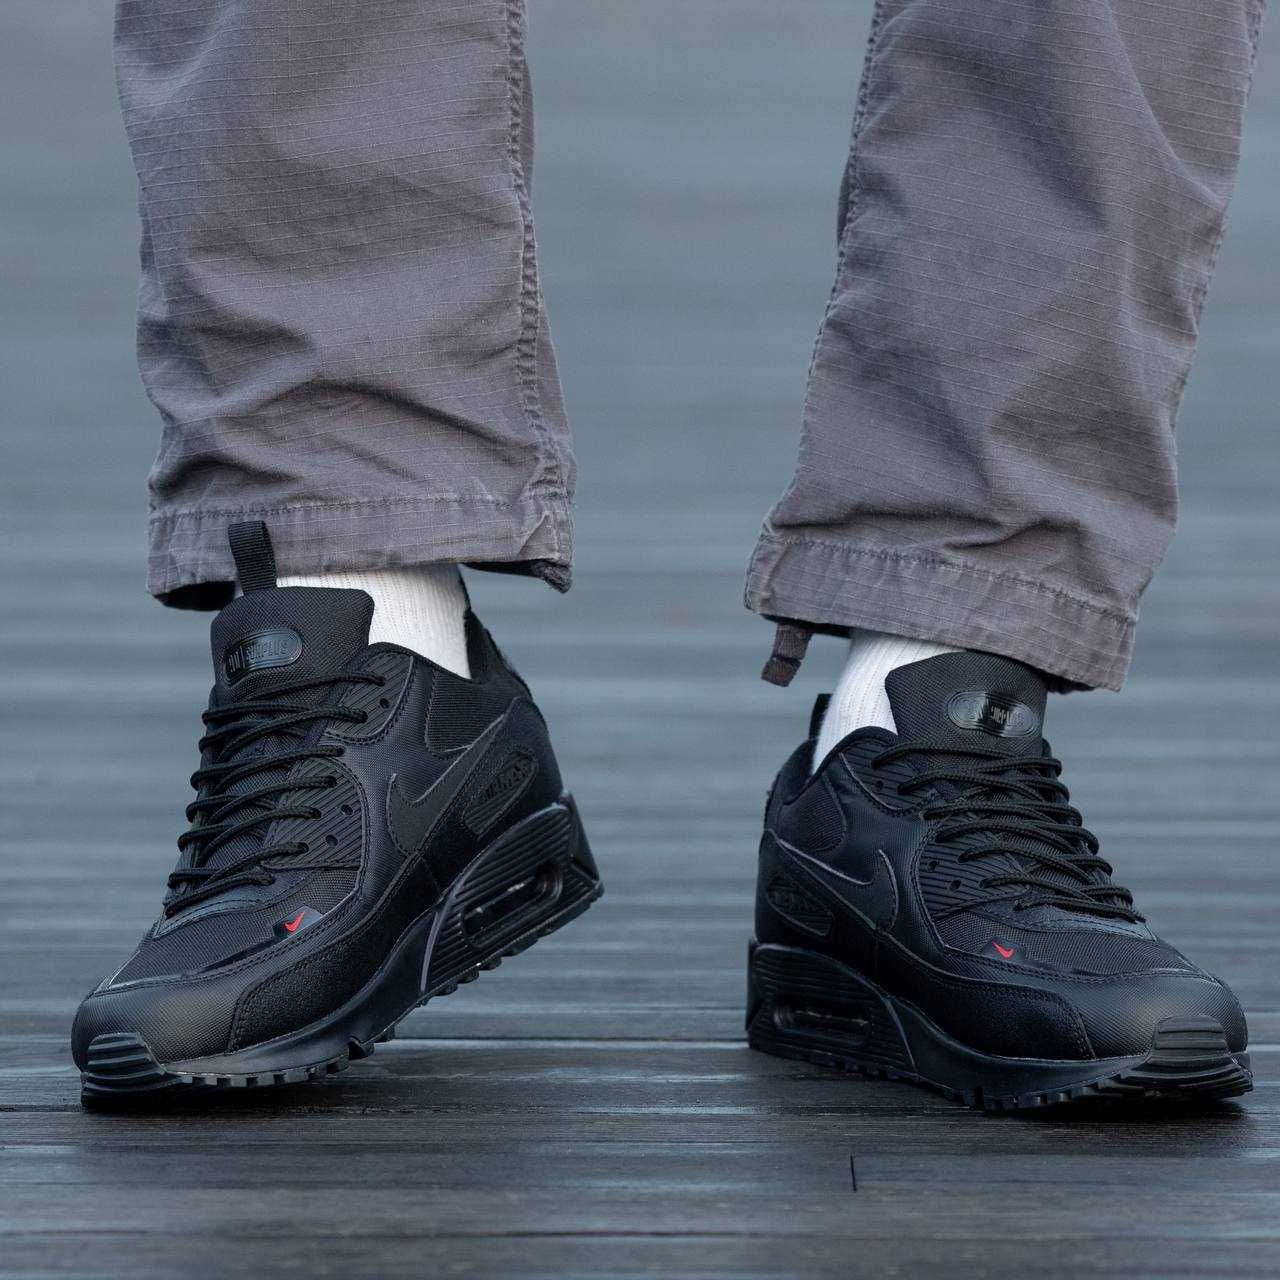 Nike Air Max 90 x Cordura Black кроссовки мужские nike air max (найк)